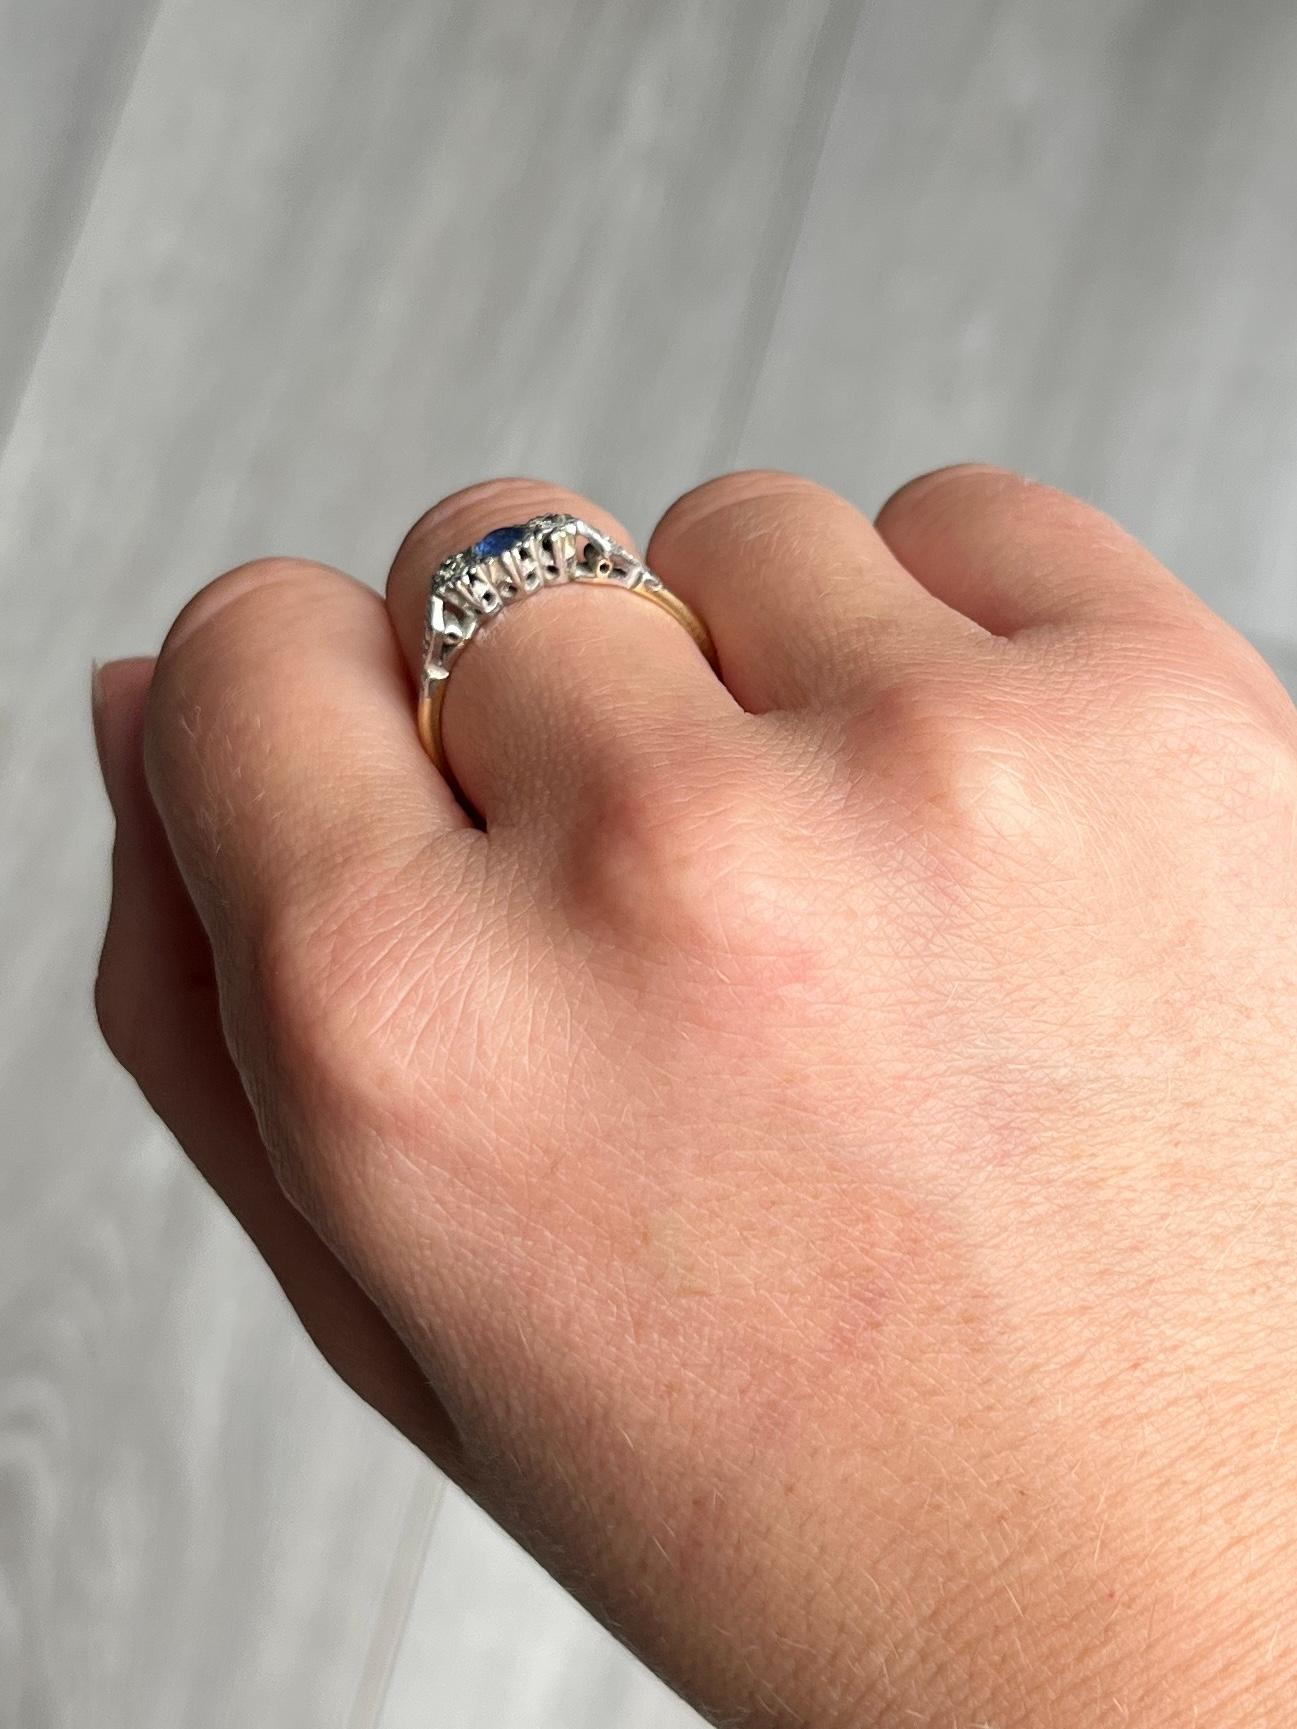 Dieser atemberaubende Ring aus 18-karätigem Gold und Platin enthält einen zentralen Saphir von etwa 15 pts Größe und ist von guter blauer Farbe. Zu beiden Seiten des Mittelsteins ist jeweils ein Diamant mit einer Größe von ca. 2 pts eingesetzt.